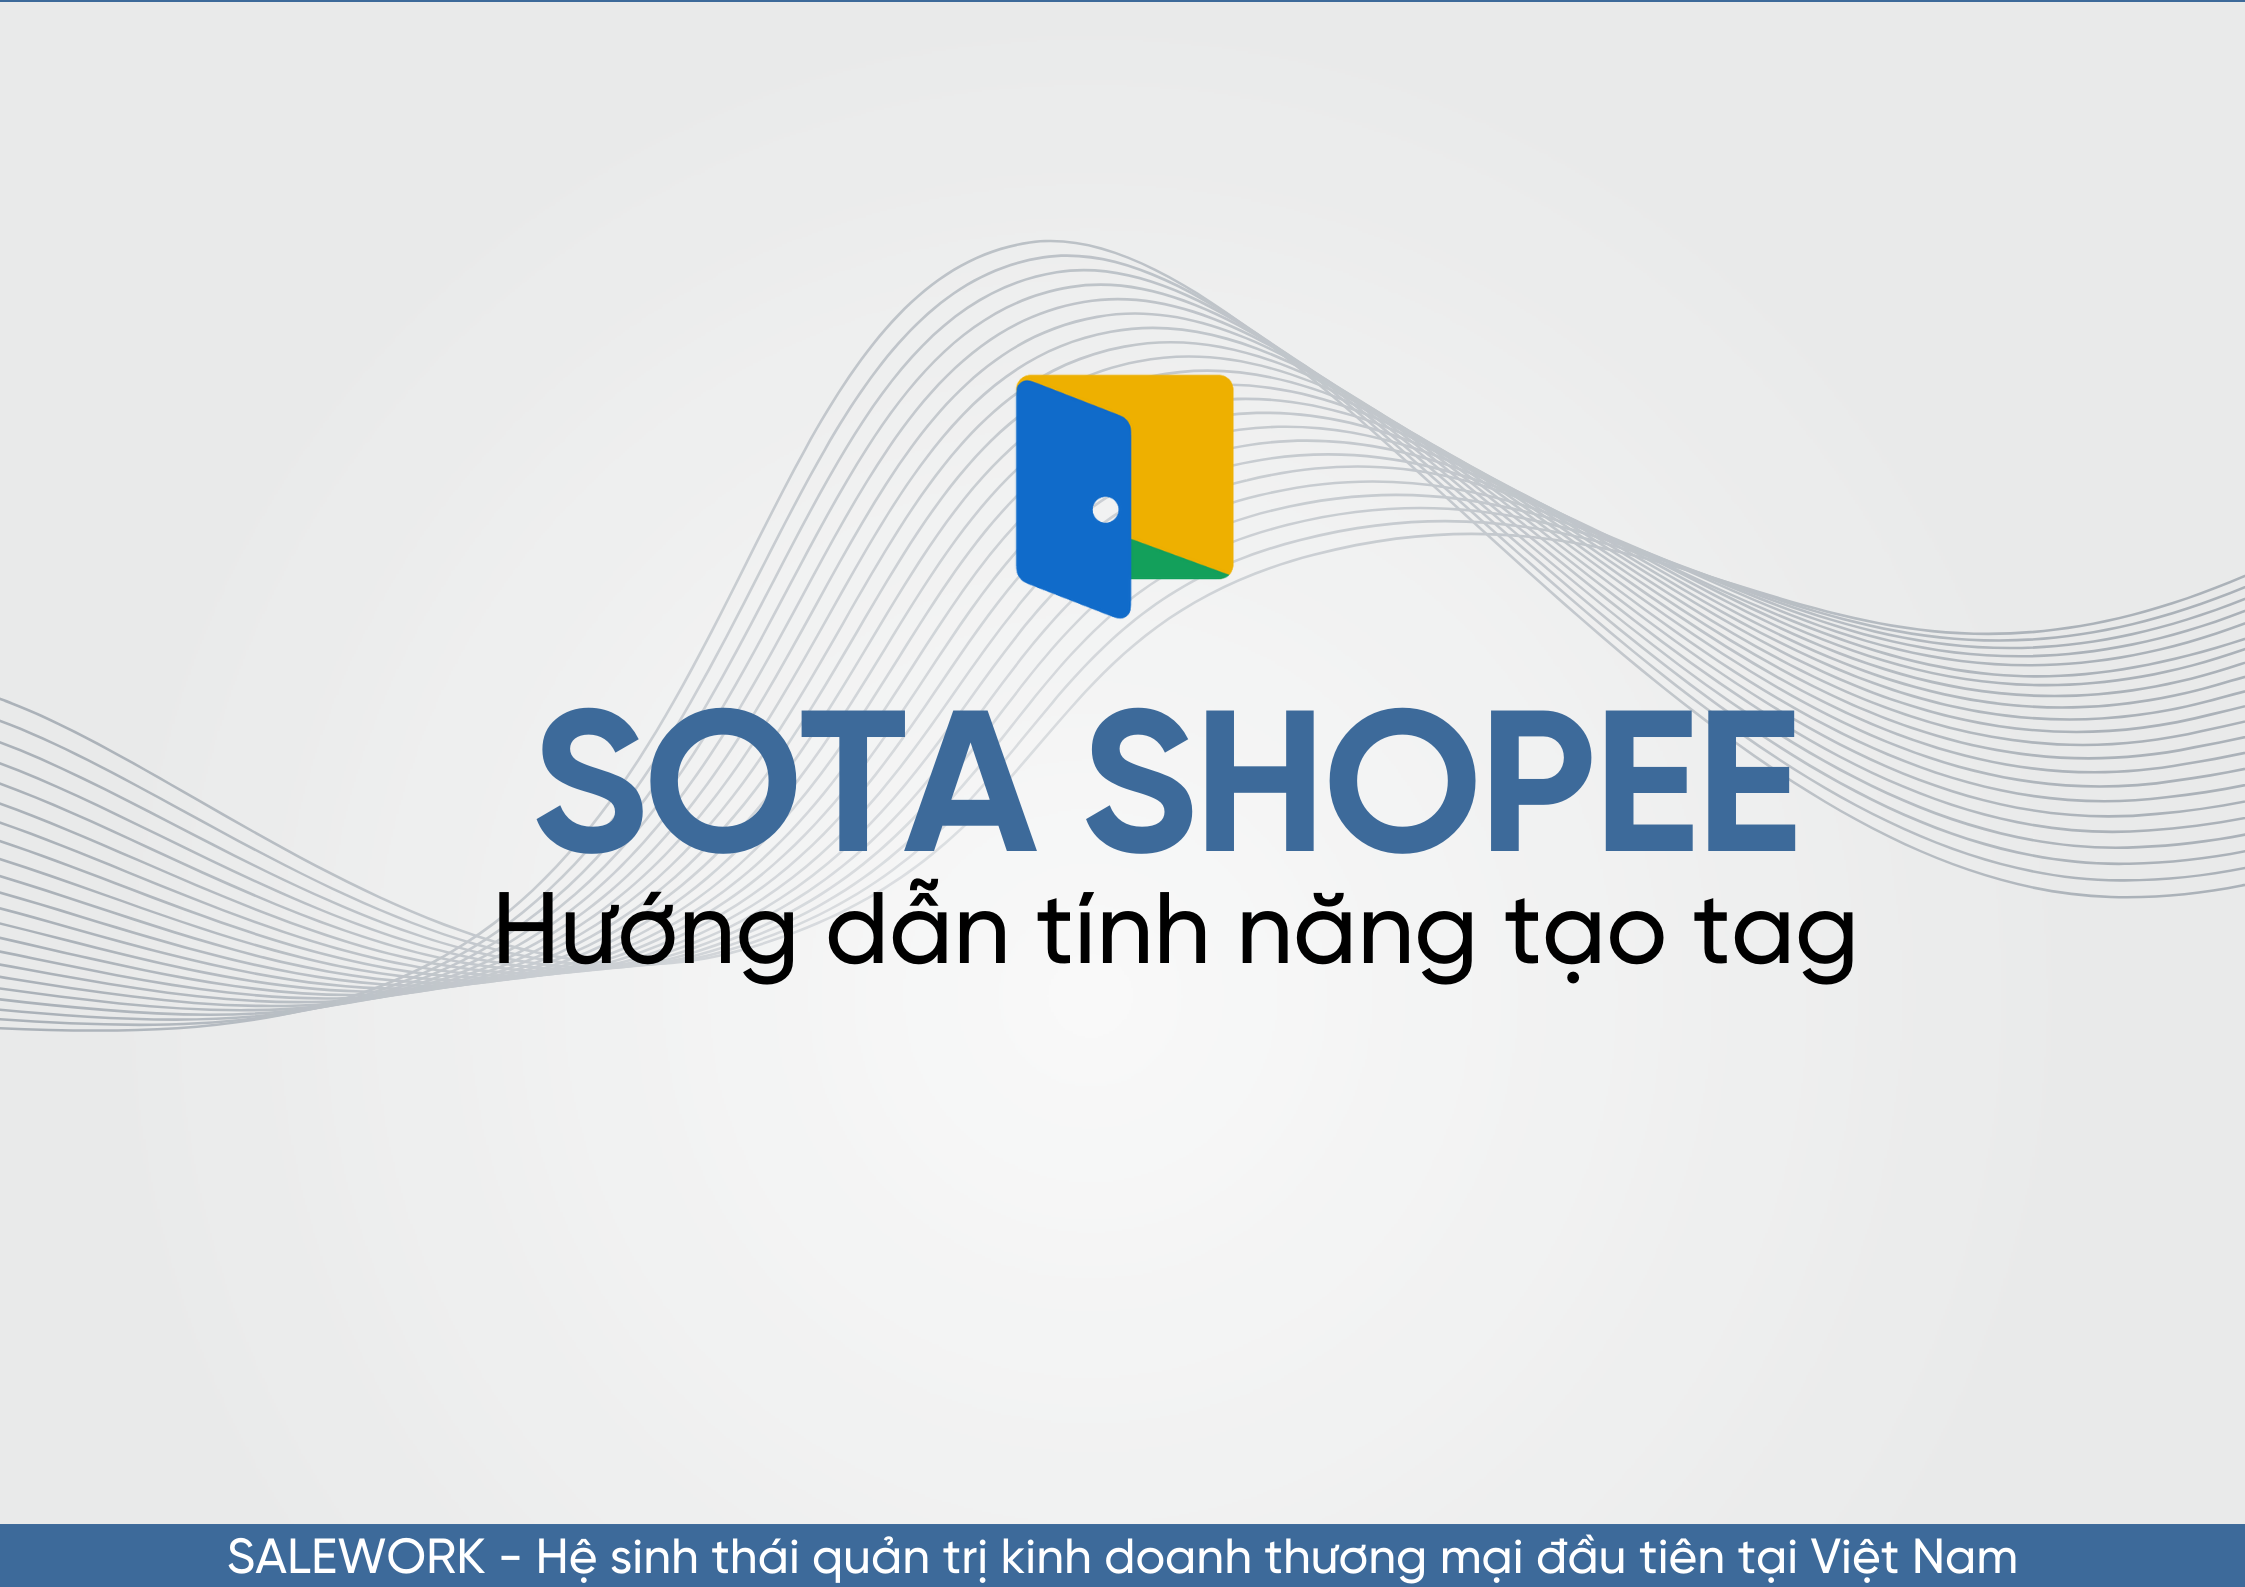 Hướng dẫn tính năng tạo tag trên SOTA Shopee - 89